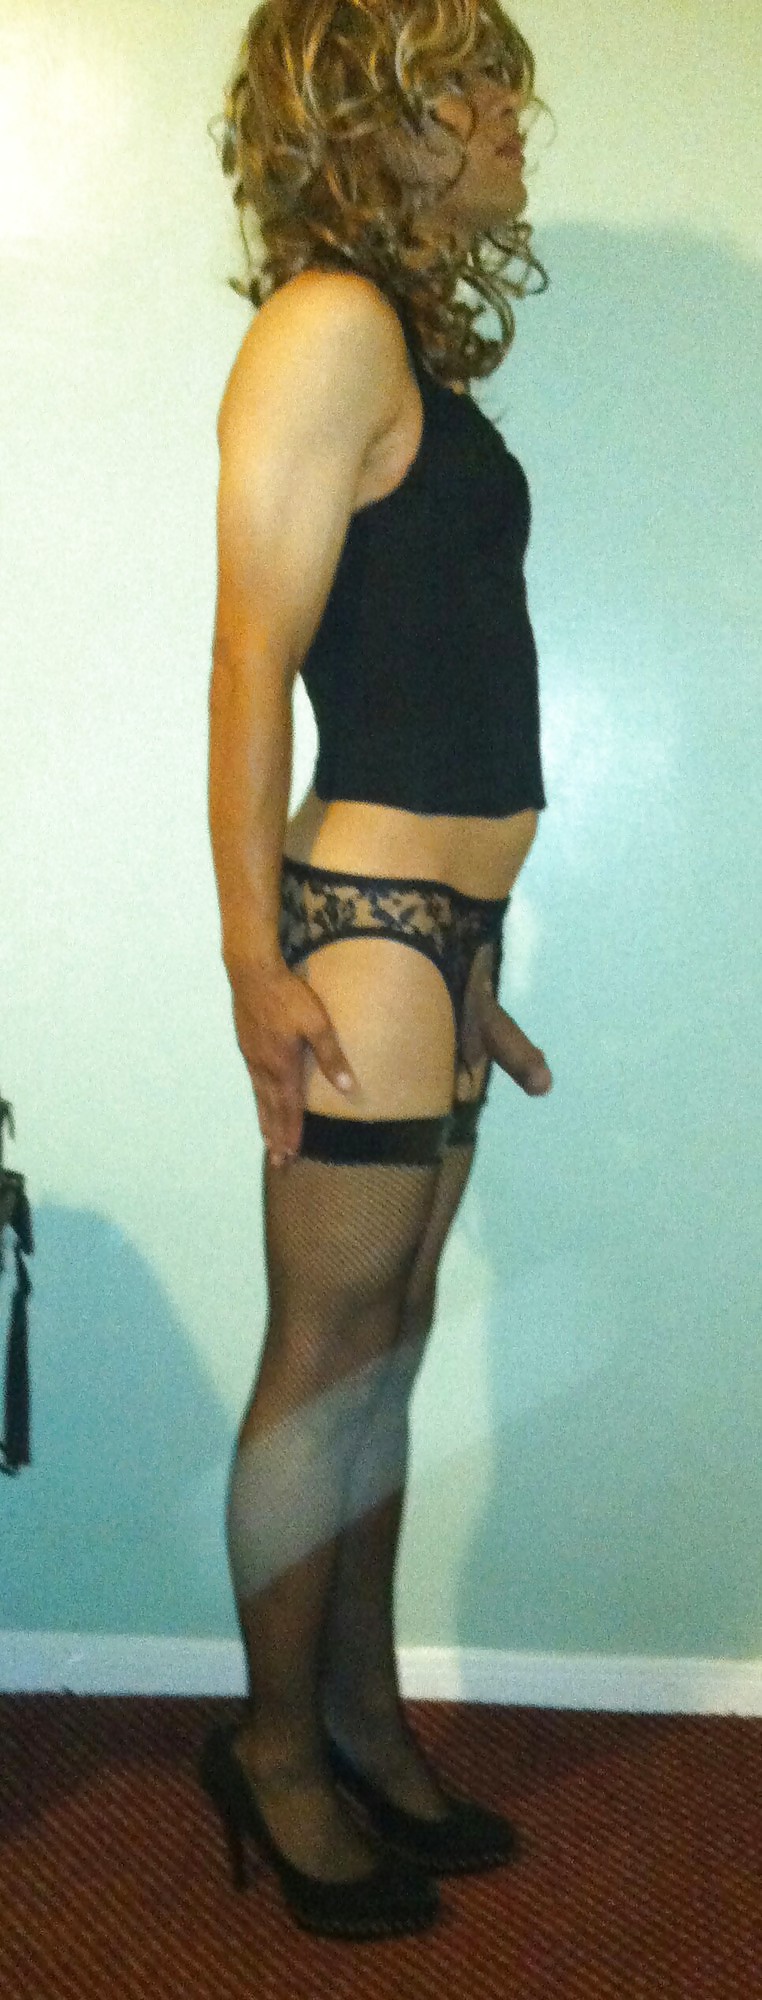 My Sir dressing me up like a sissy slut 2 #19901721